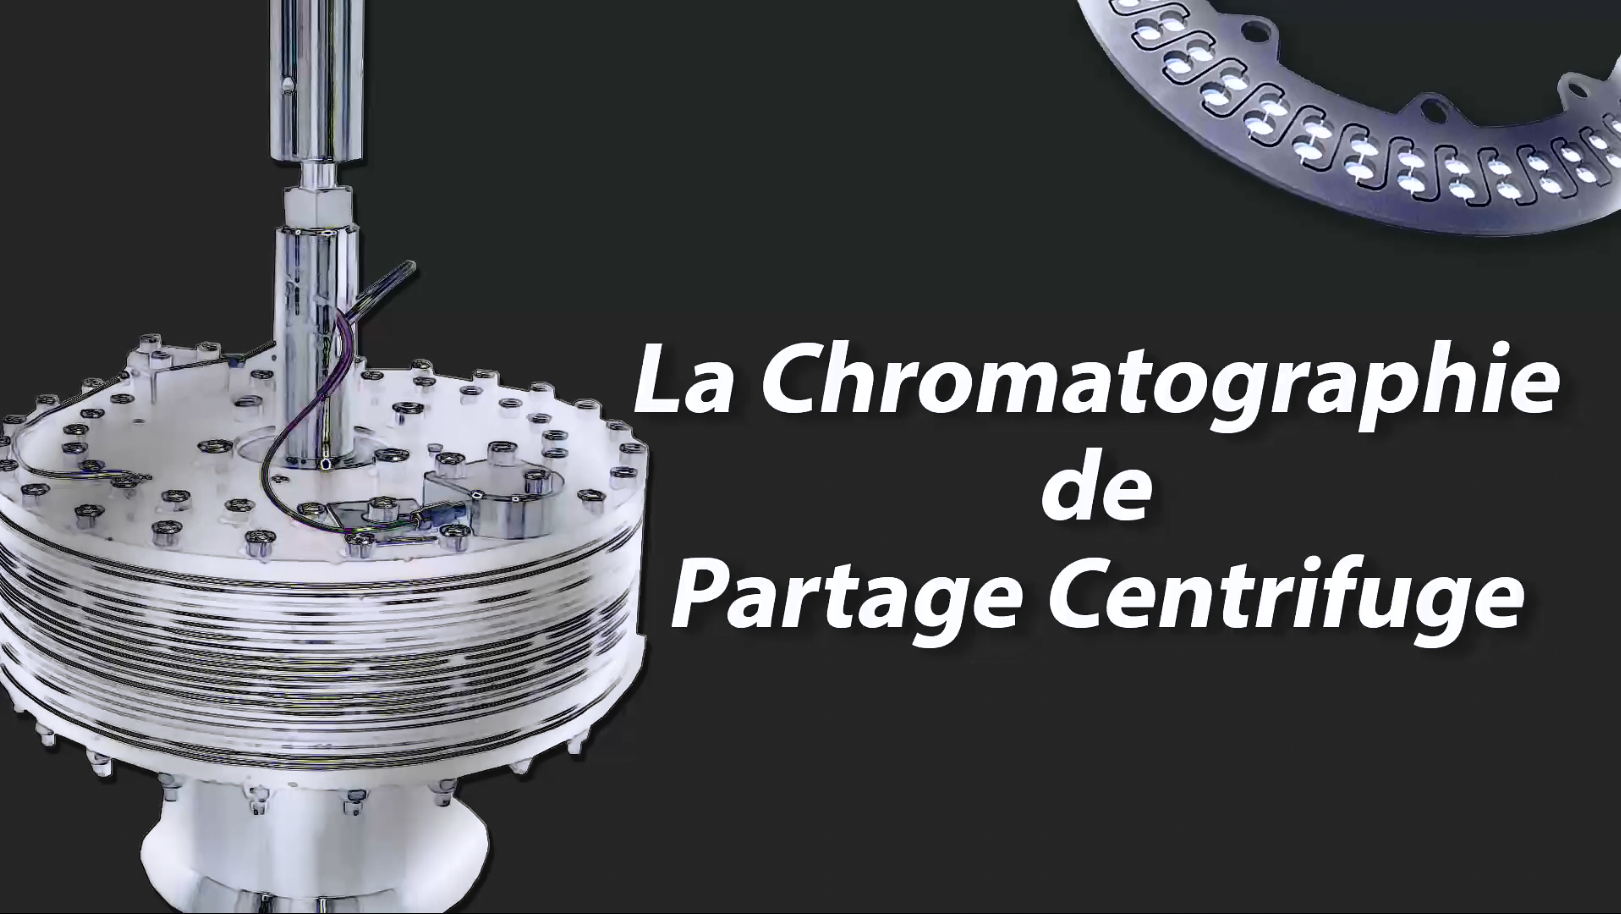 La chromatographie de partage centrifuge - Séparation de substances naturelles